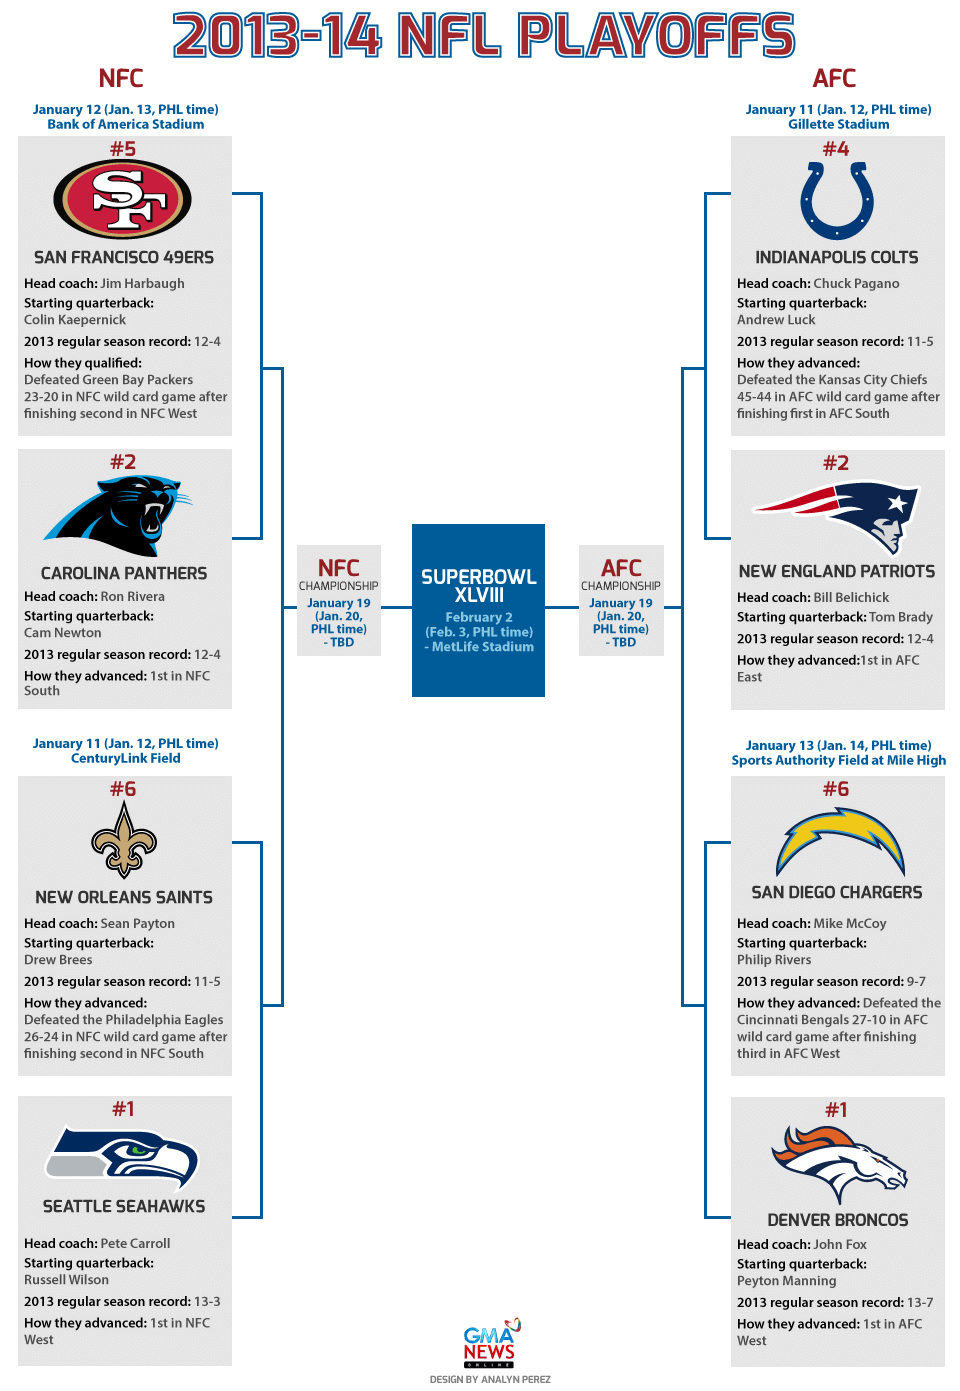 2013-14 NFL playoffs bracket